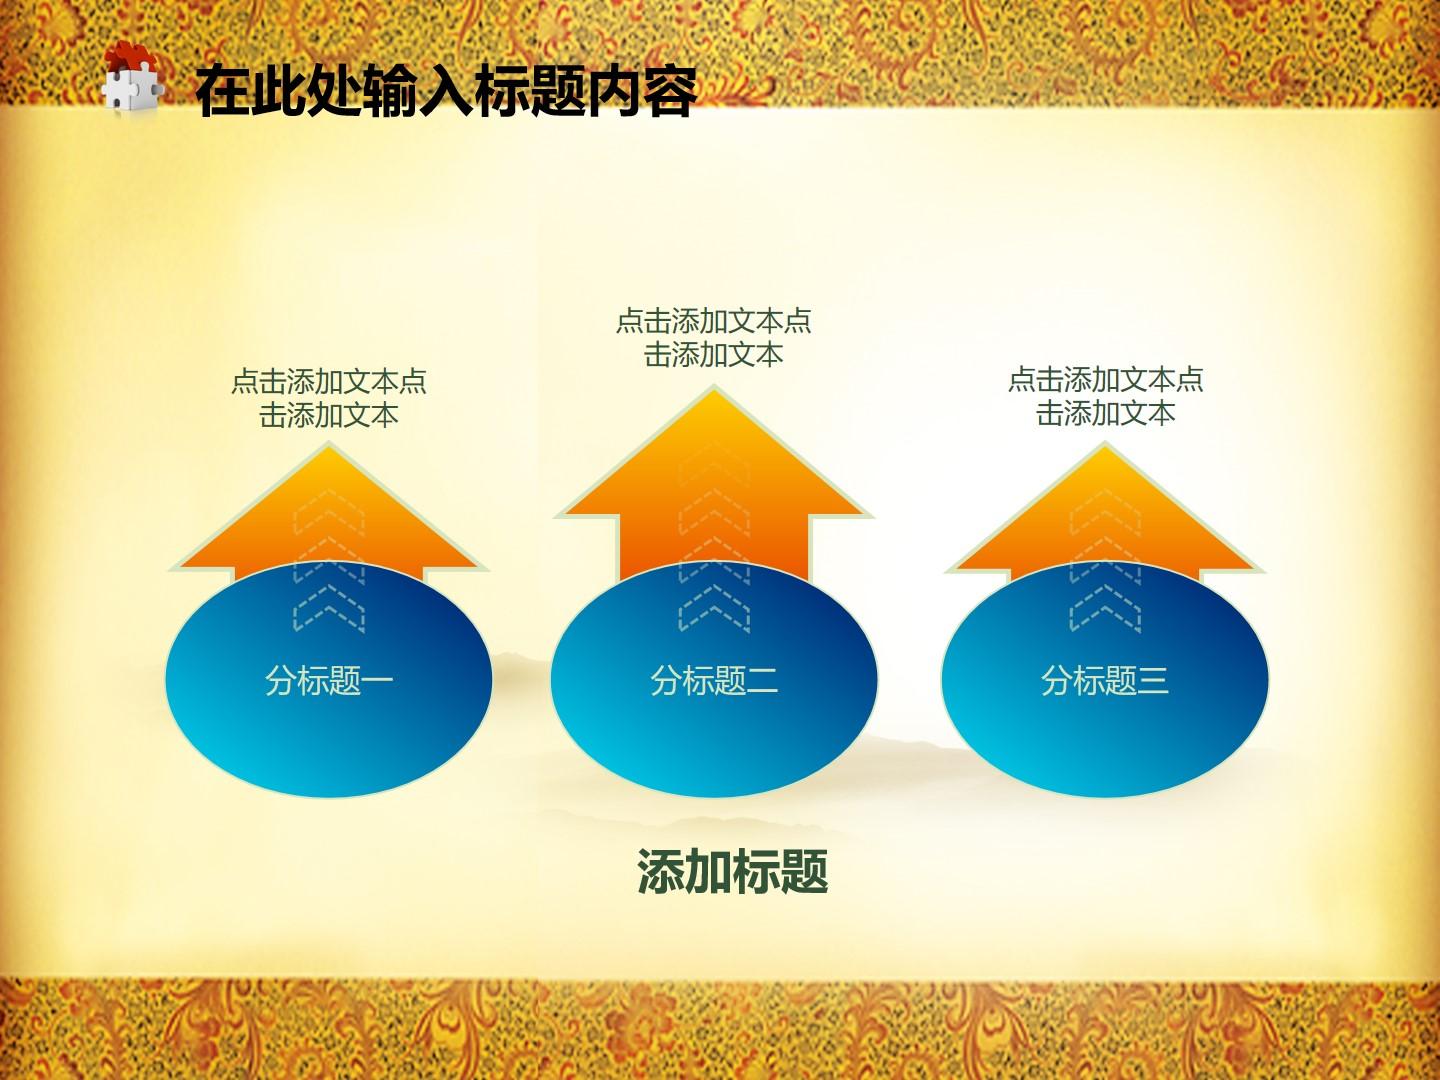 教育教学橙色黄色白色中国风突出实景云素材PPT模板1672494446938